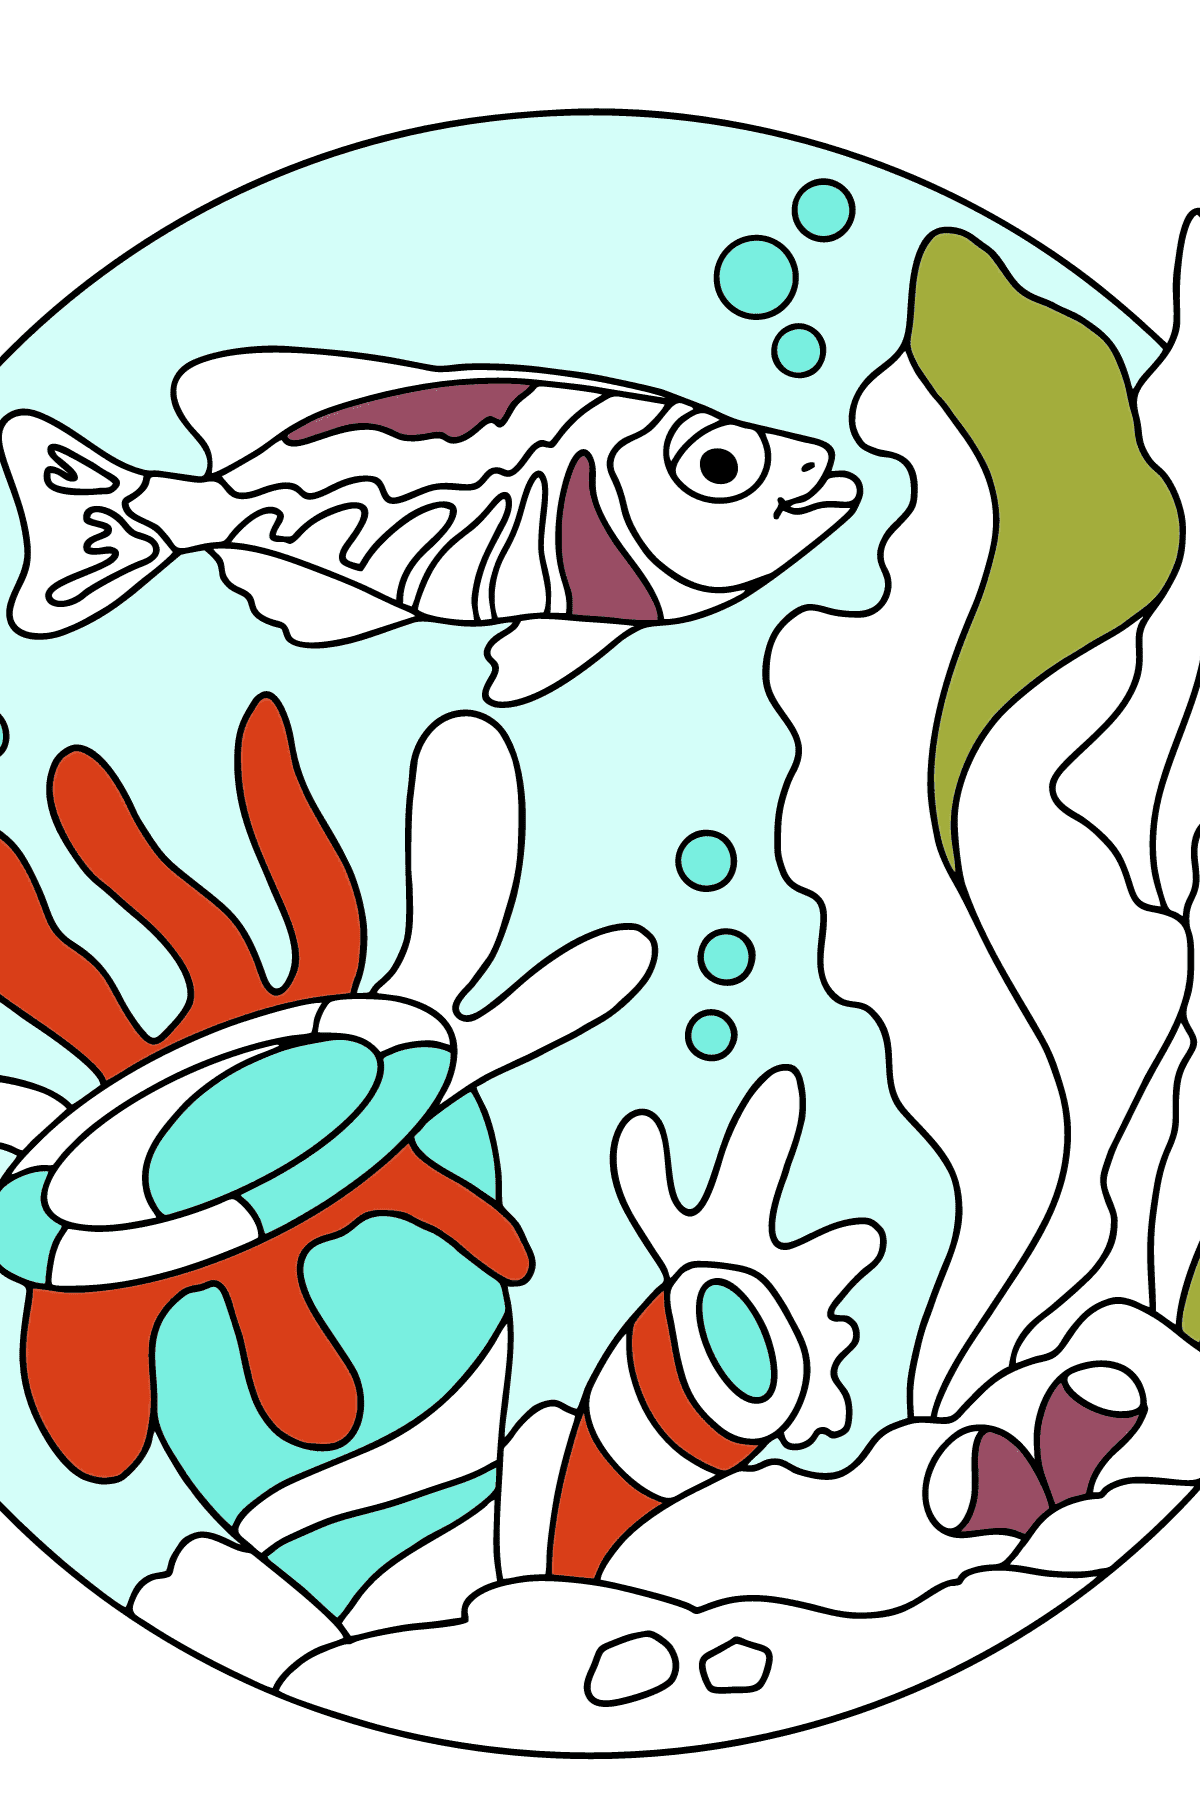 Desenho de peixe para colorir - Imagens para Colorir para Crianças